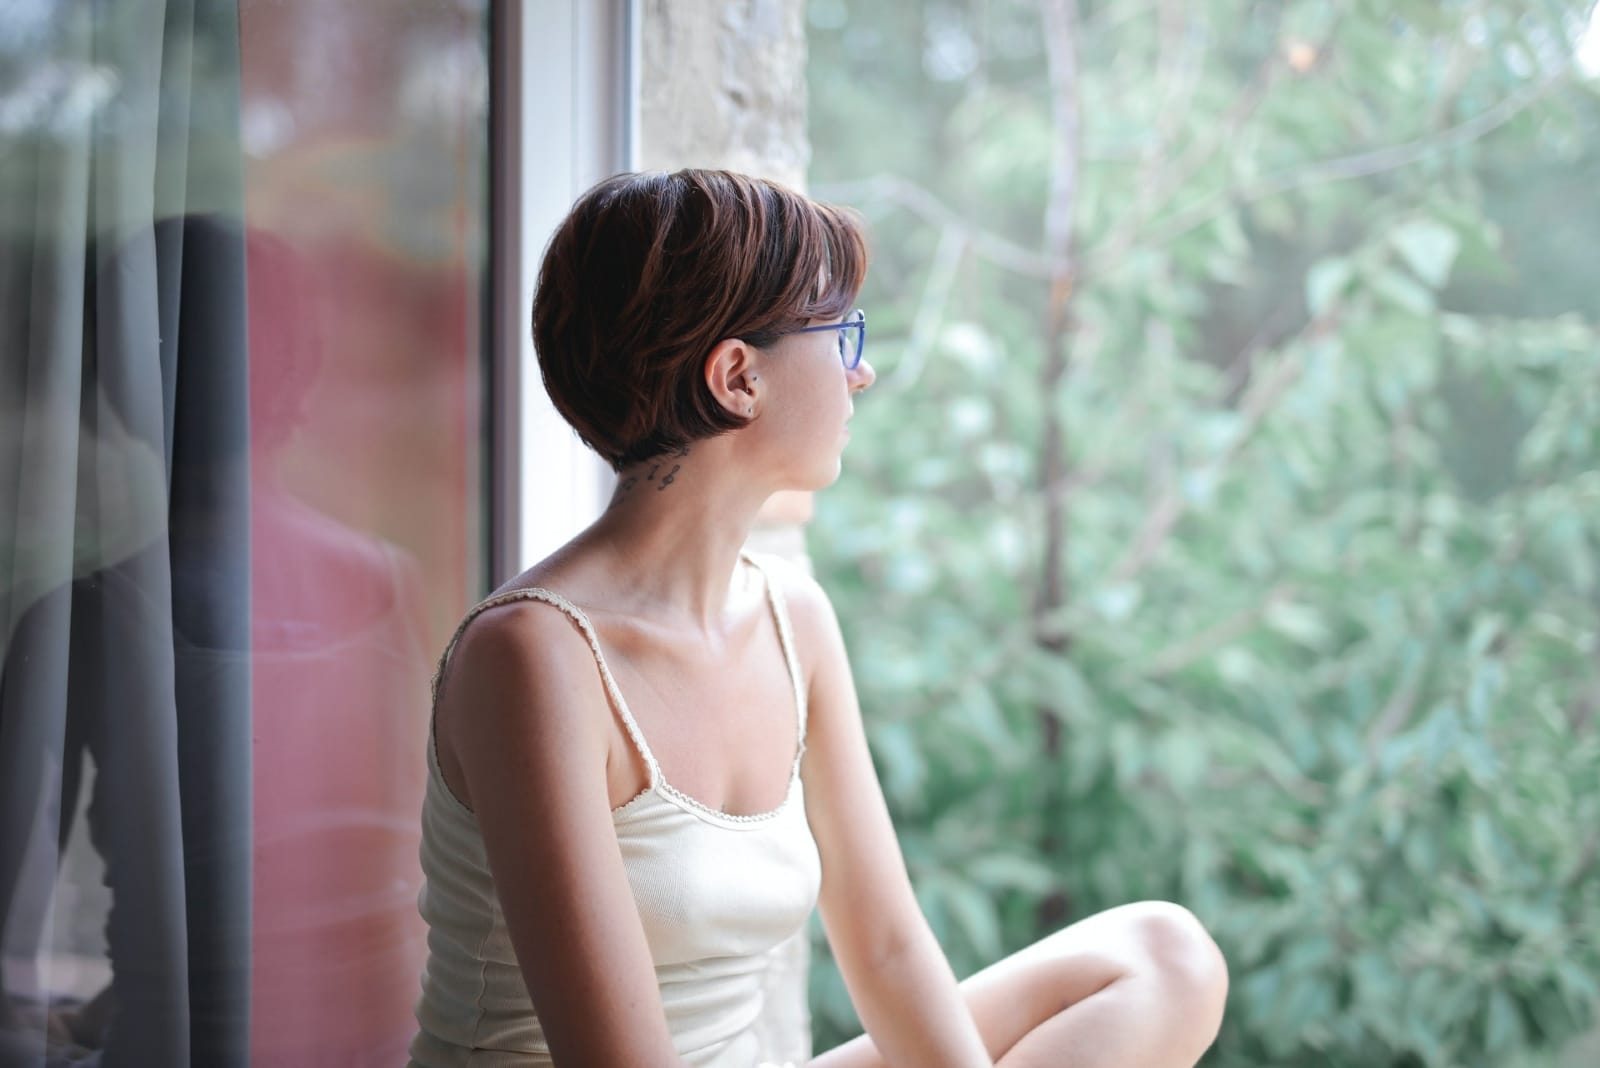 donna seduta sul vetro della finestra che guarda fuori